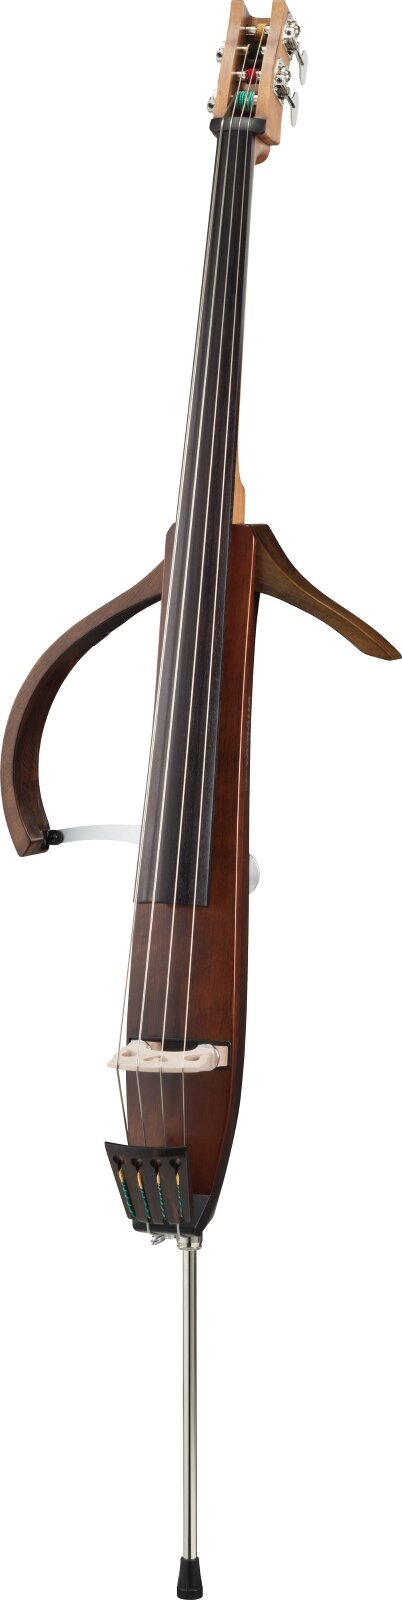 Yamaha Kontrabass SLB-300 Silent Bass : photo 1